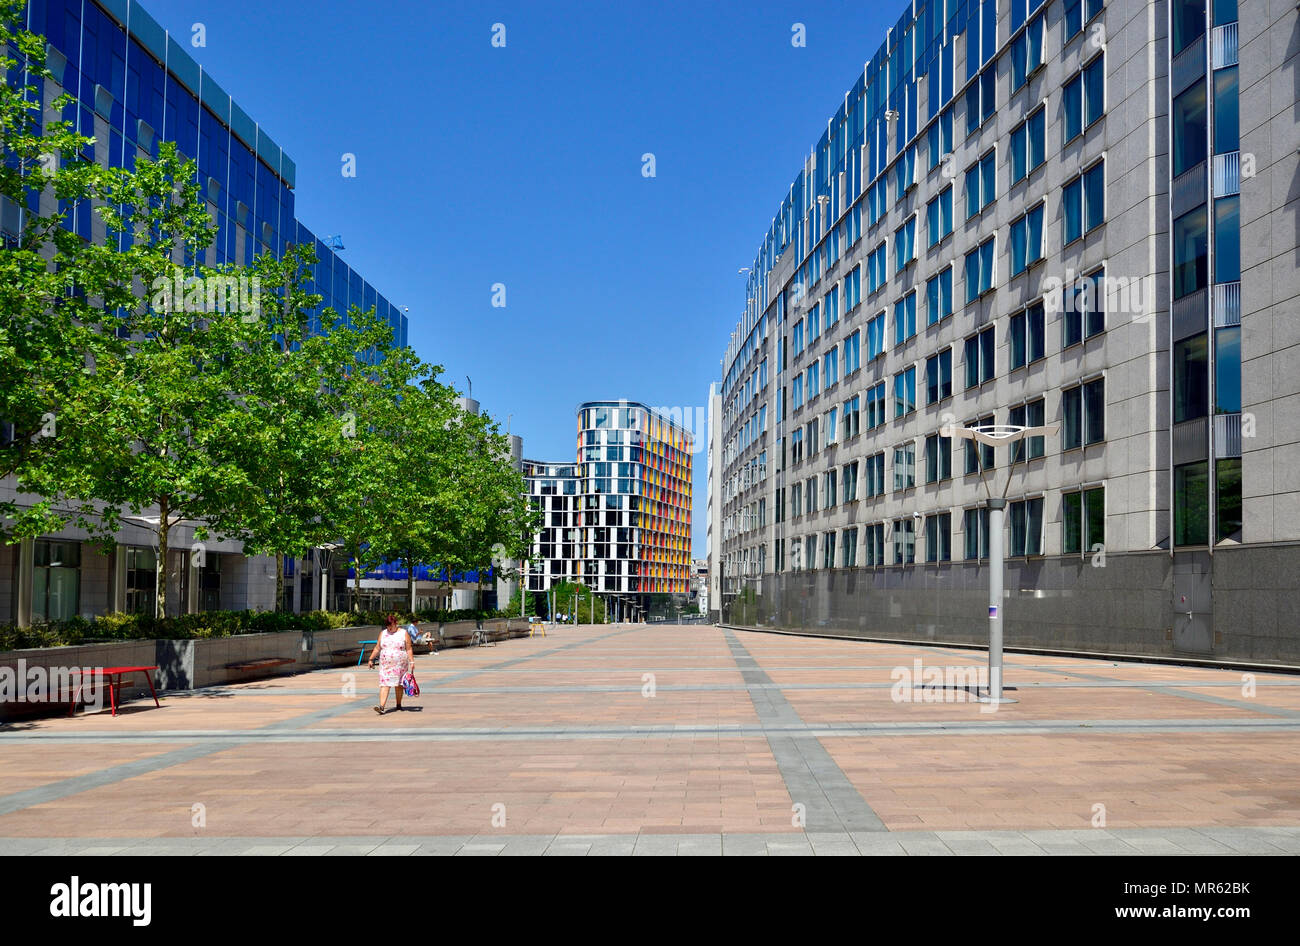 Brüssel, Belgien. Europäischen Parlament Gebäude - Espace Leopold, offenen Raum durch die Haupteingänge Stockfoto